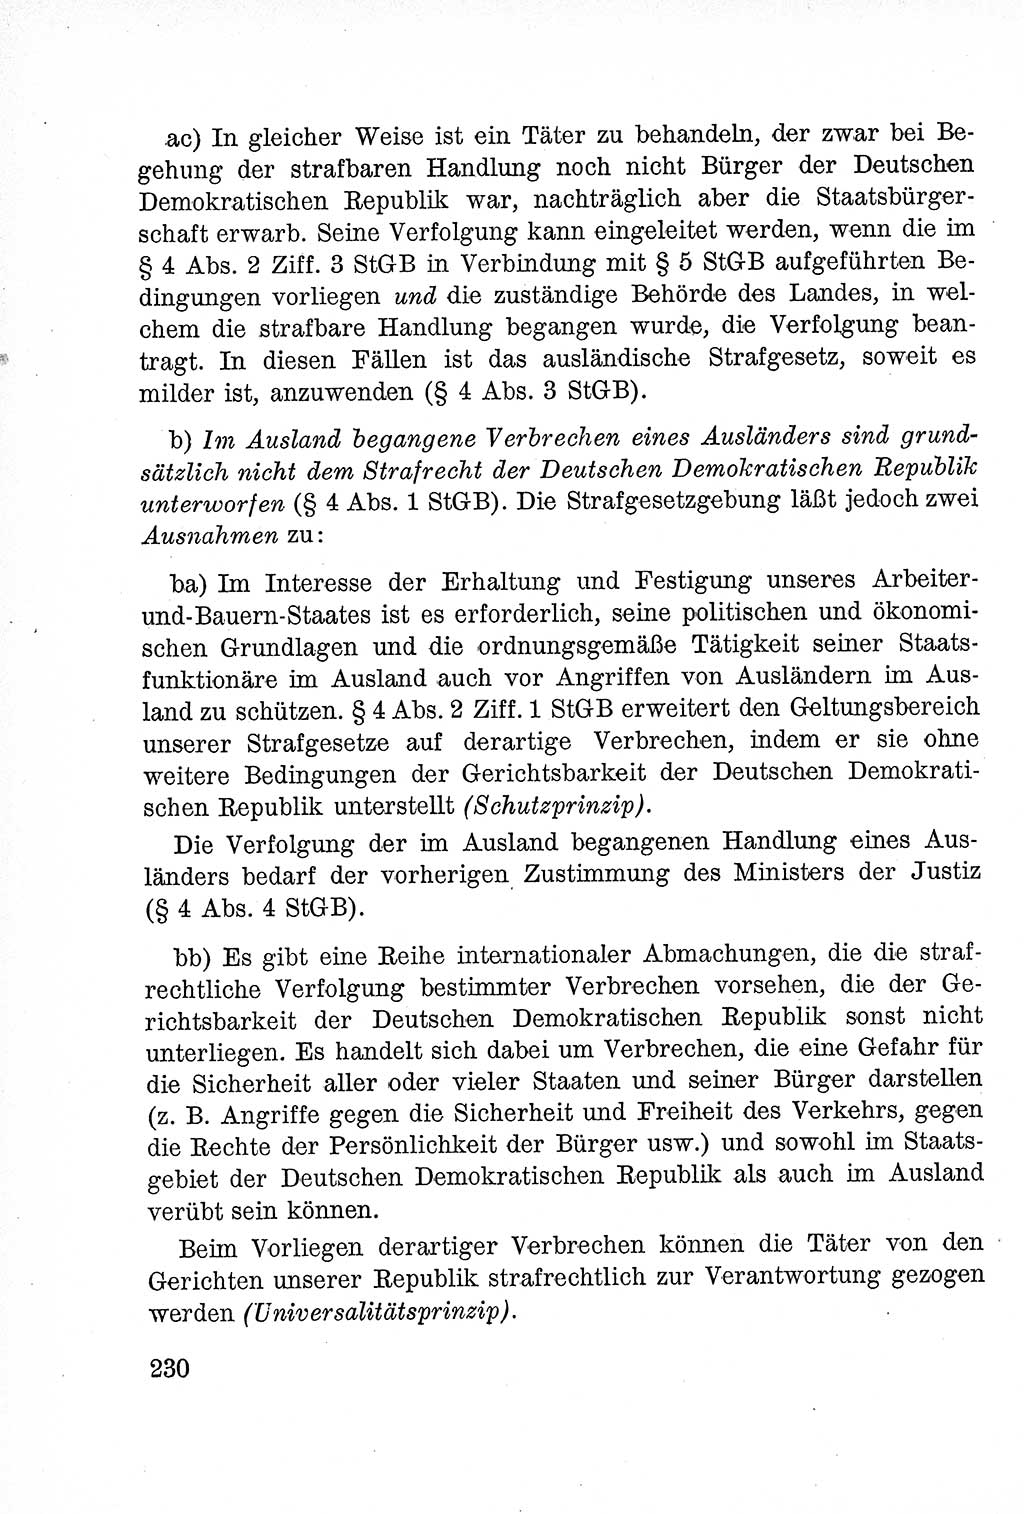 Lehrbuch des Strafrechts der Deutschen Demokratischen Republik (DDR), Allgemeiner Teil 1957, Seite 230 (Lb. Strafr. DDR AT 1957, S. 230)